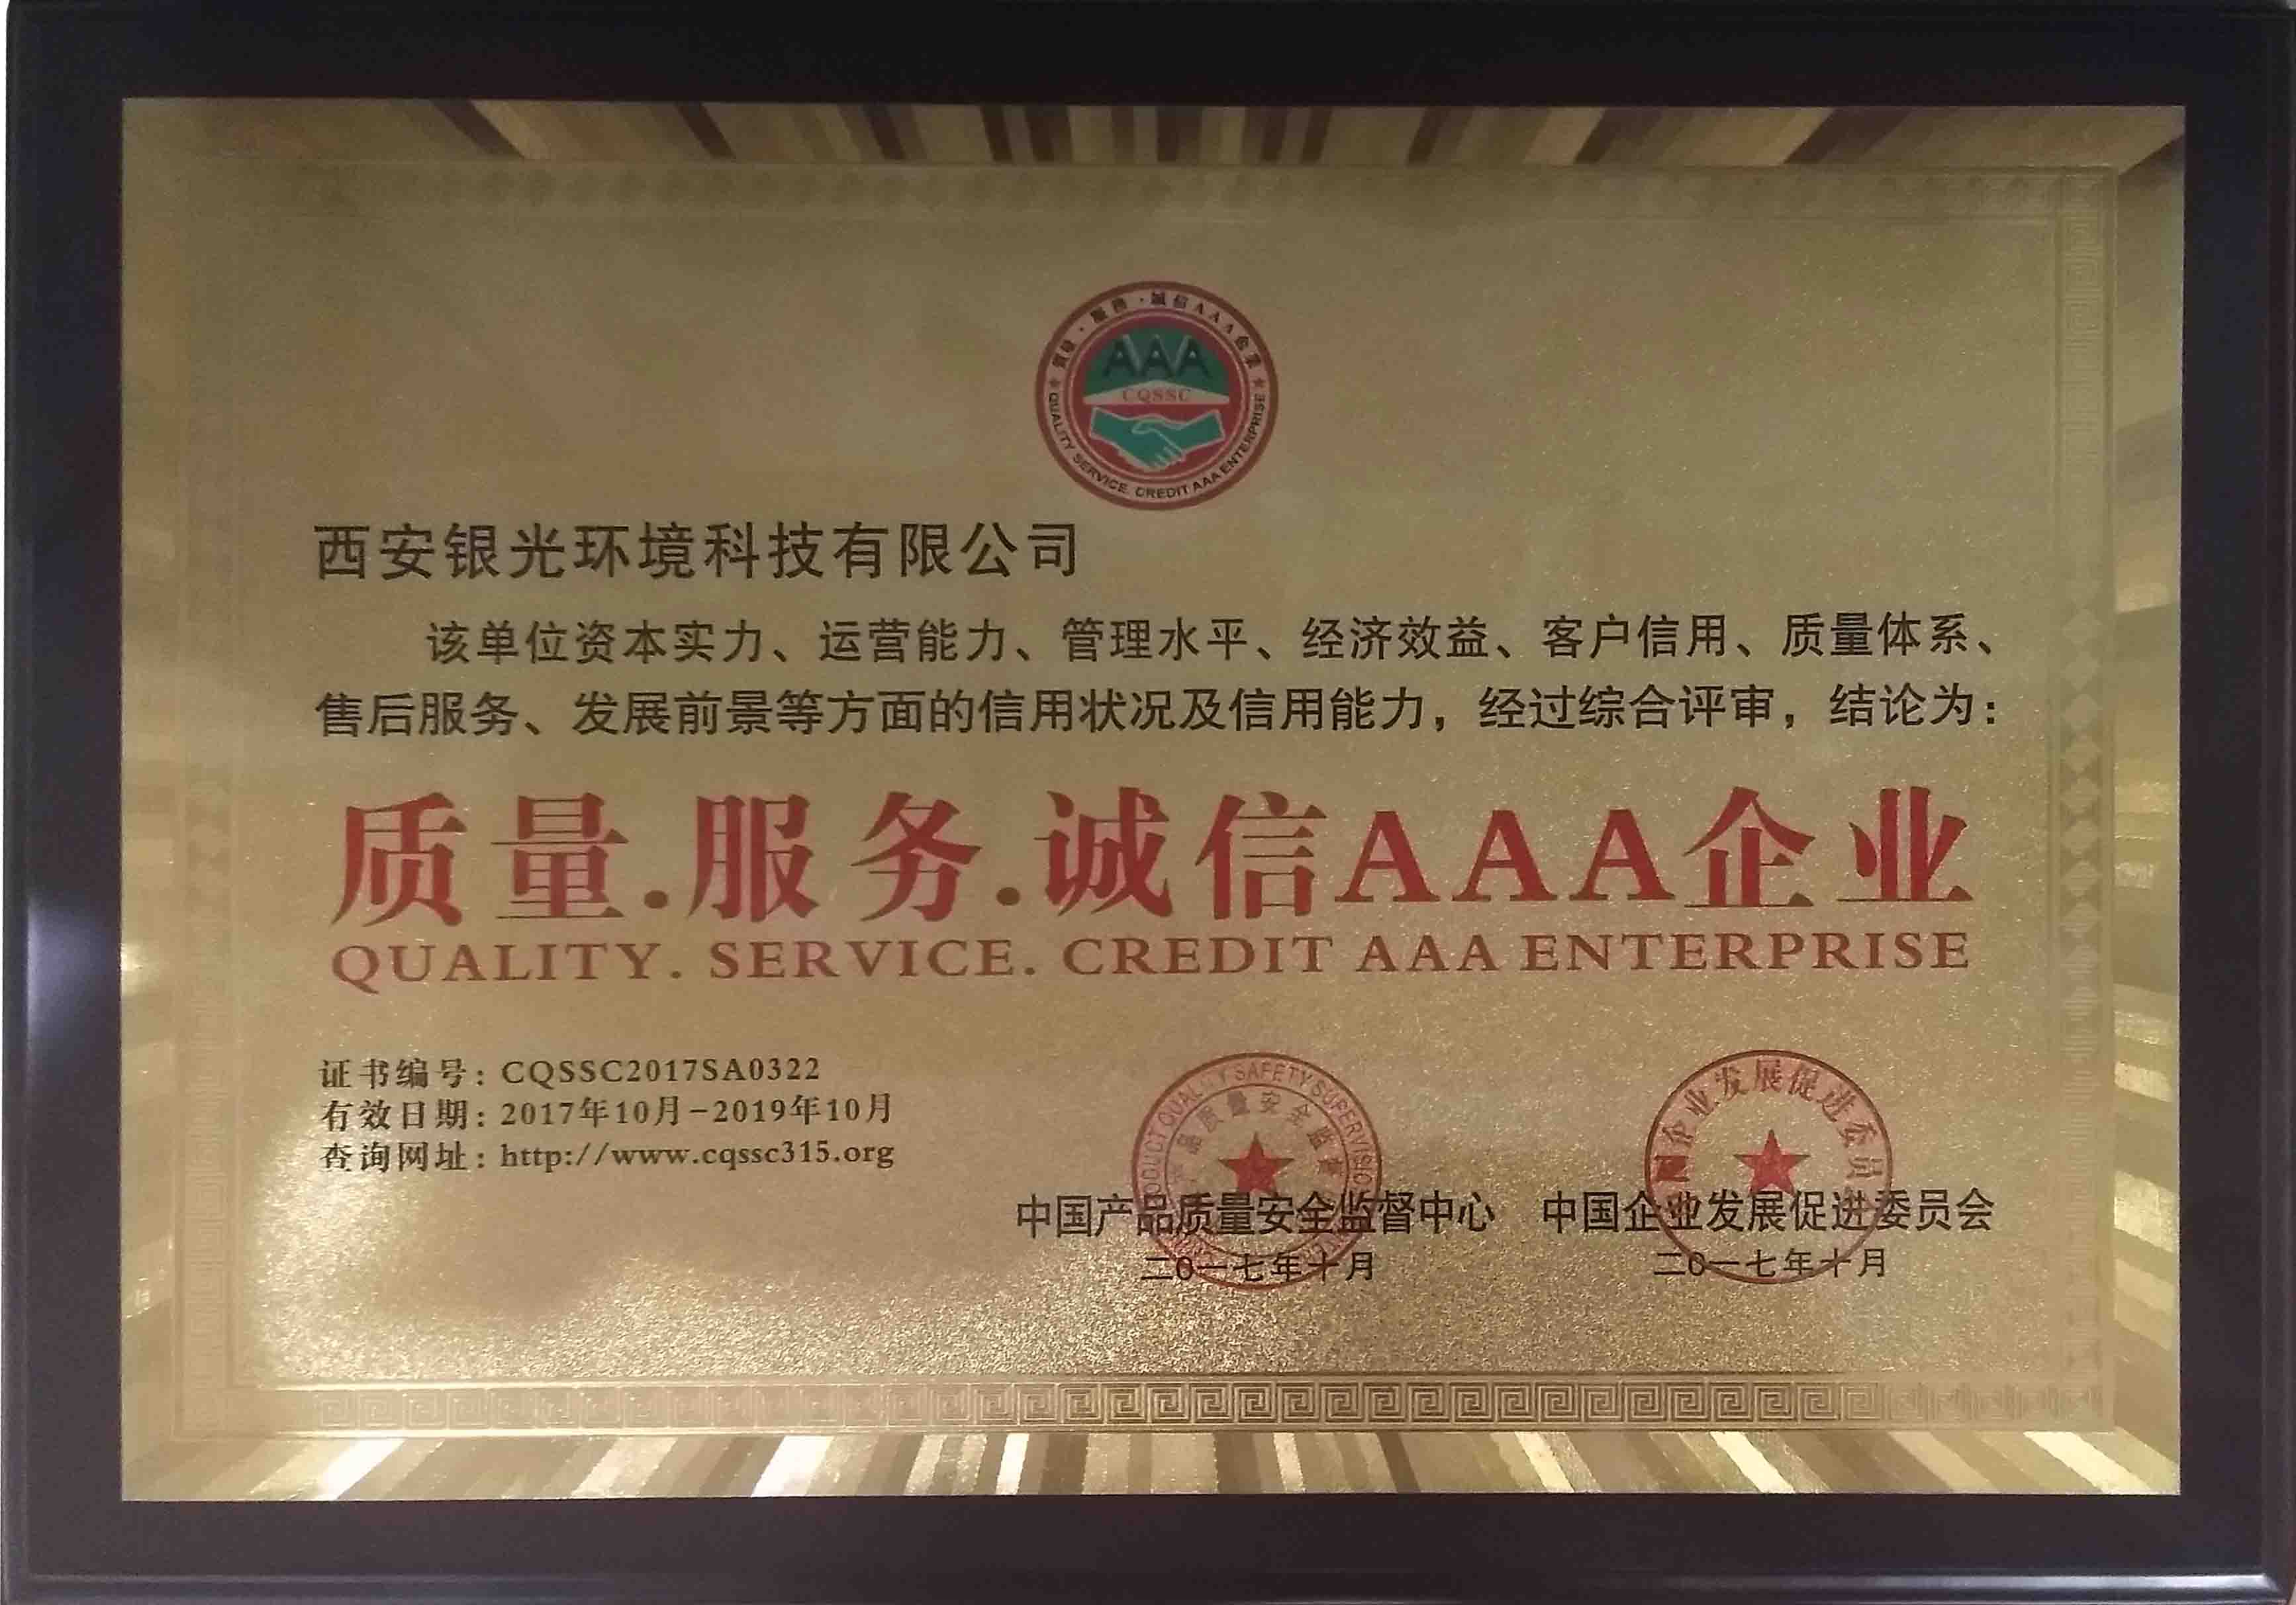 恭喜银光获得”质量 · 服务 · 诚信 AAA企业“称号